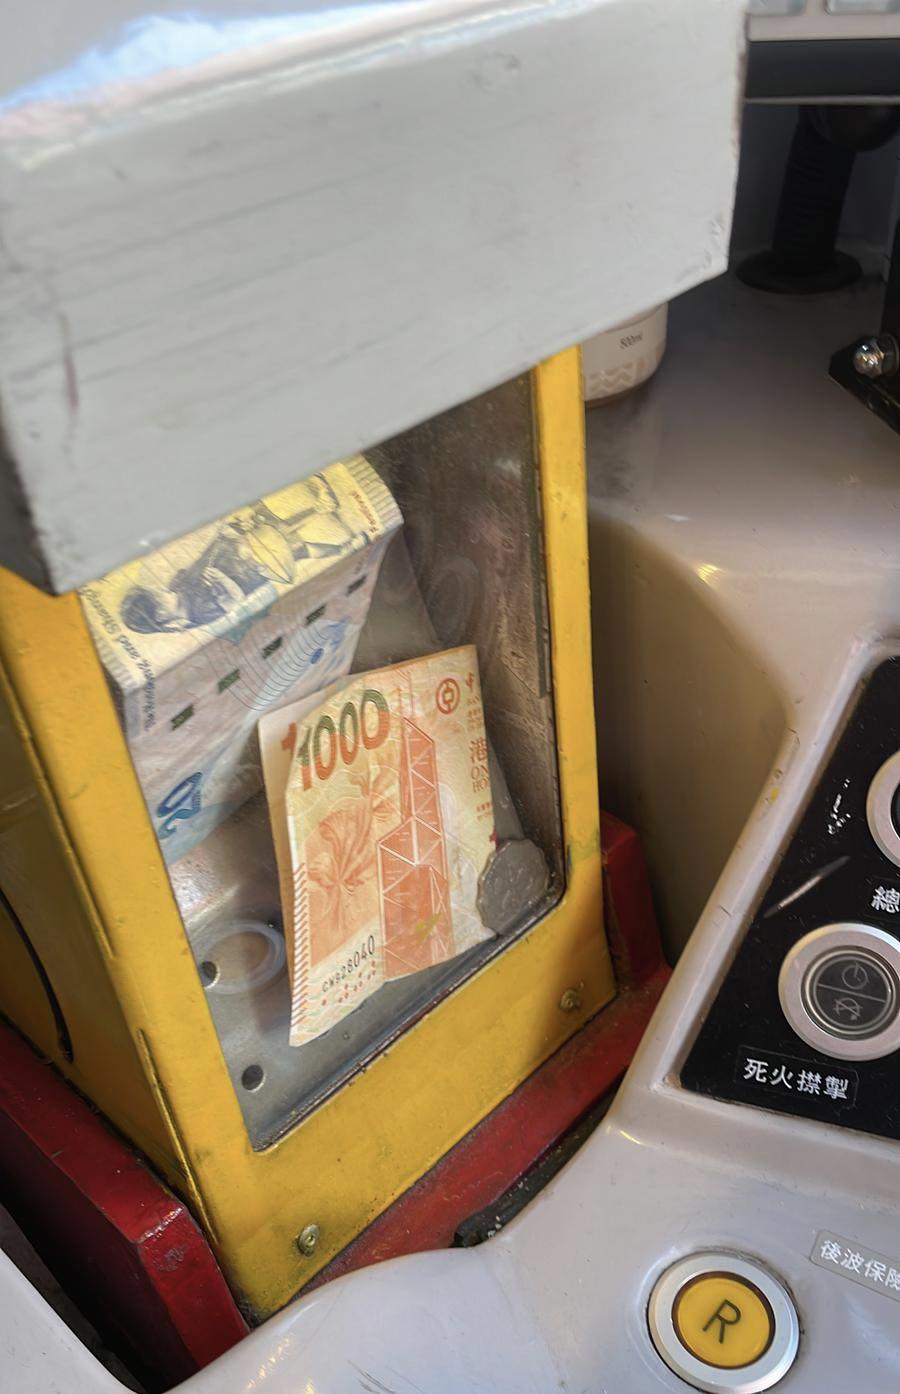 巴士錢箱出現一張對摺的金燦燦金牛。網圖